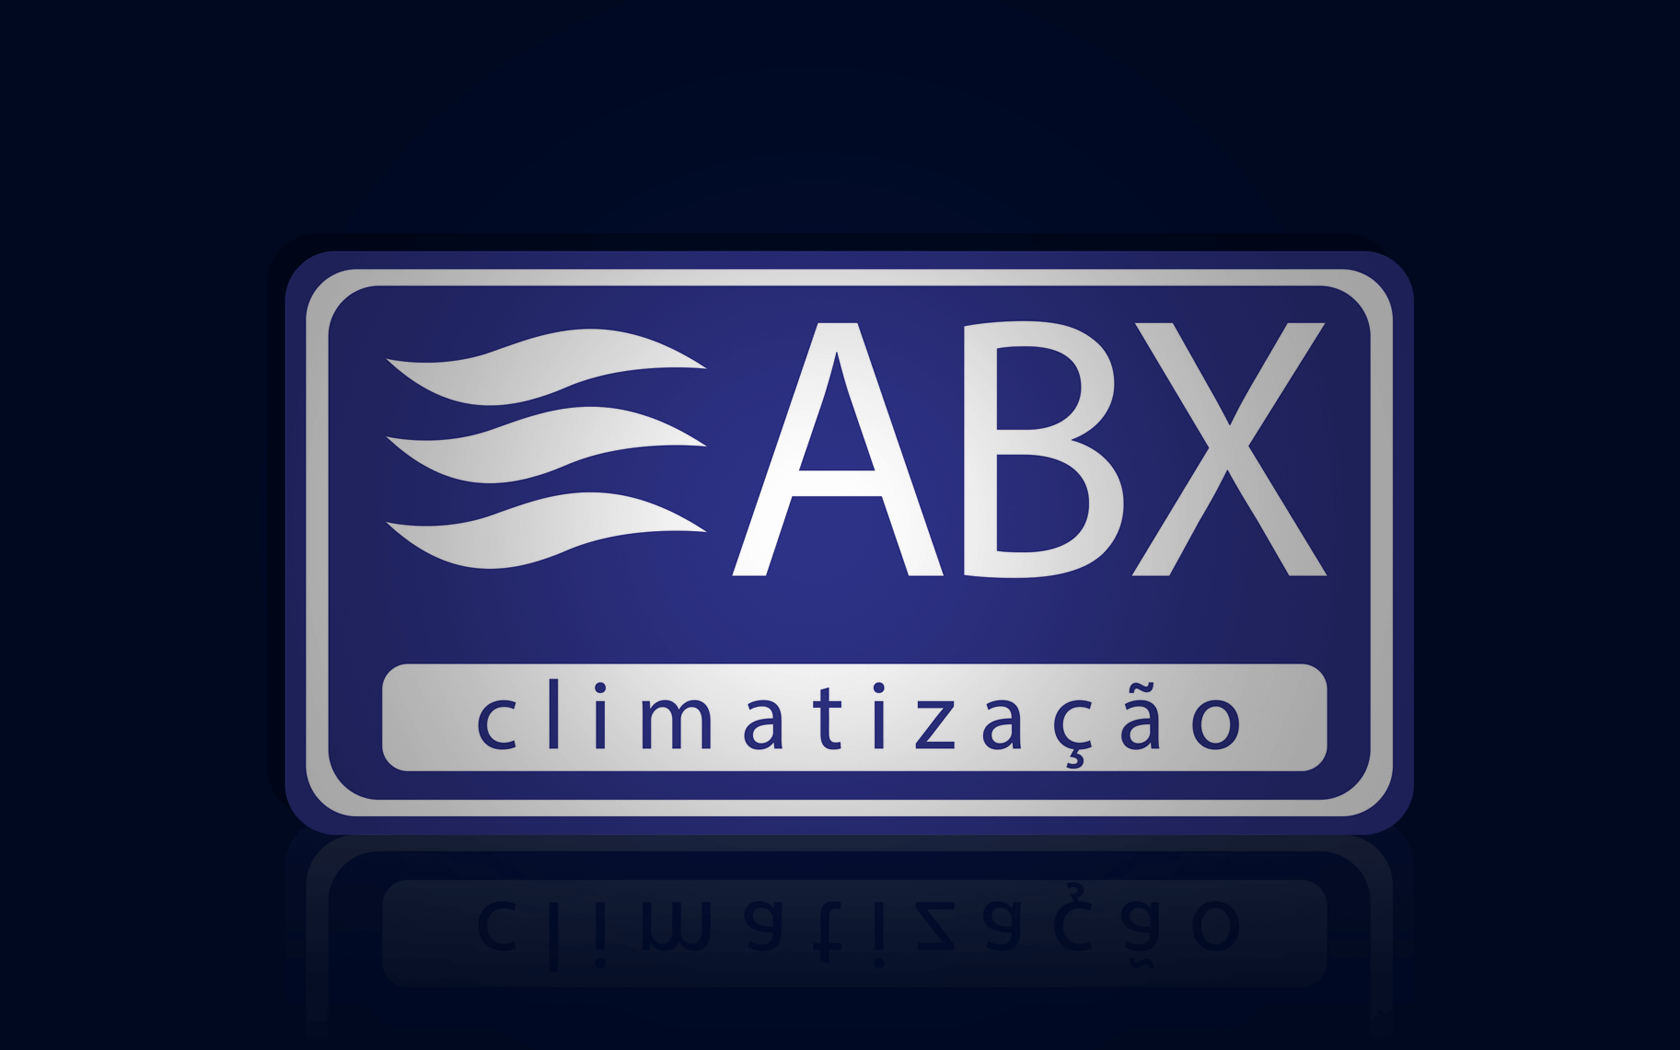 Abx Climatização, Desenvolvimento Magento.